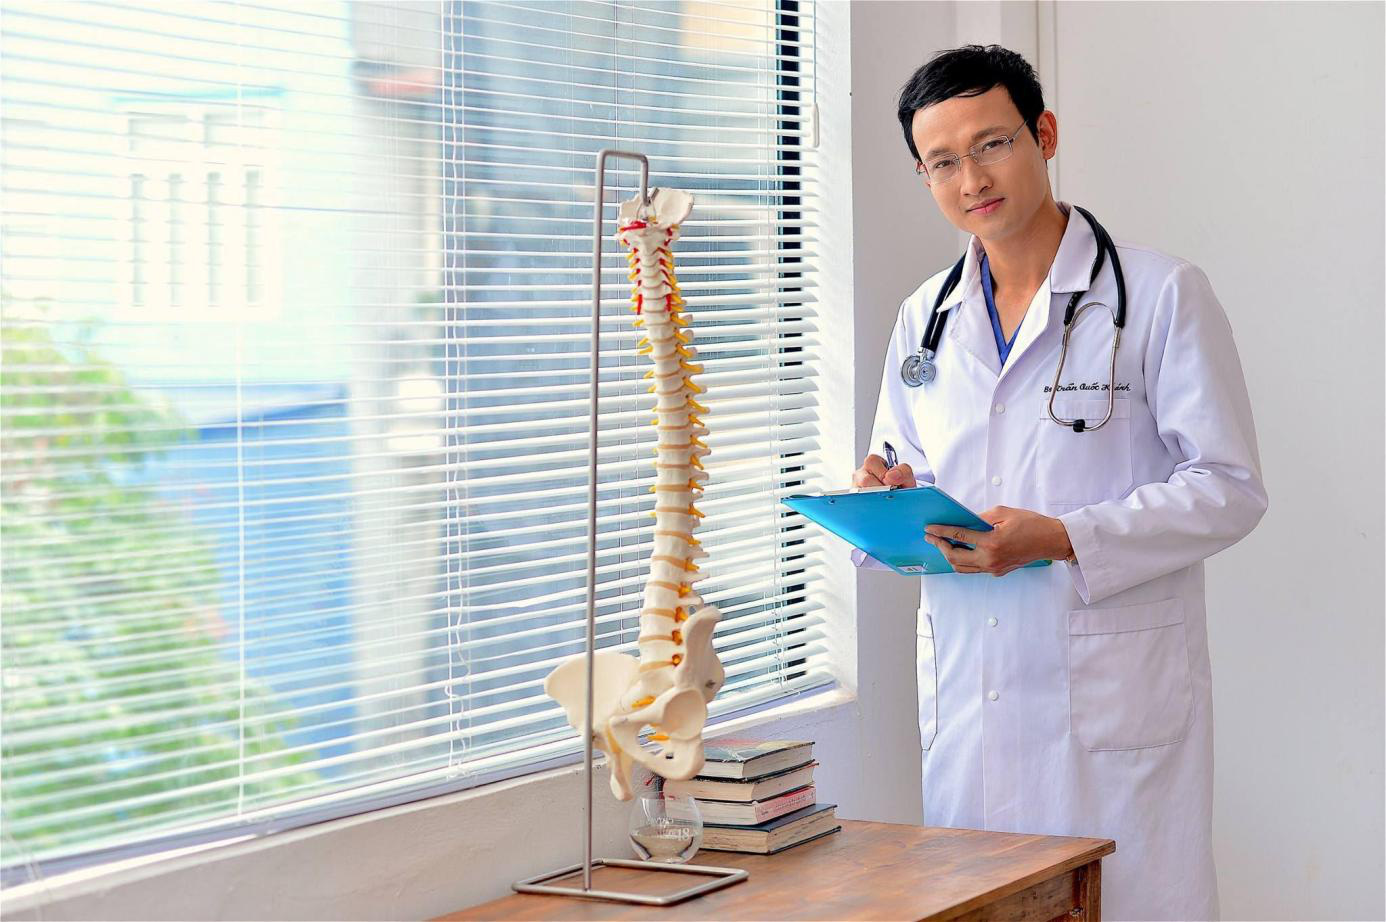 Theo chân chuyên gia tìm hiểu phương pháp hỗ trợ điều trị bệnh đau lưng hiệu quả - Ảnh 1.